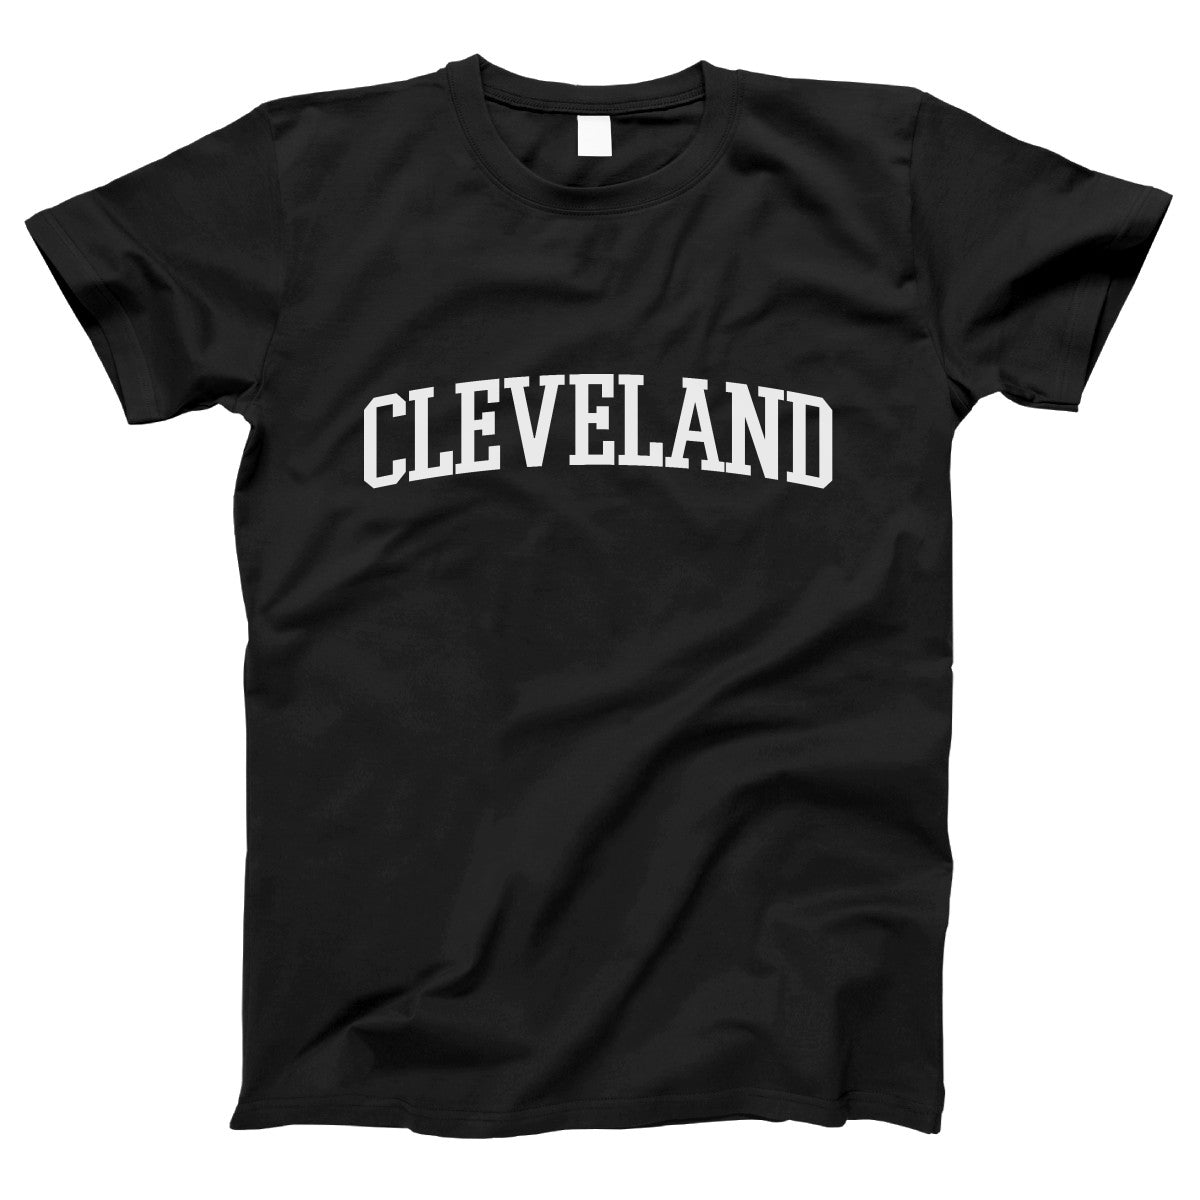 Cleveland Women's T-shirt